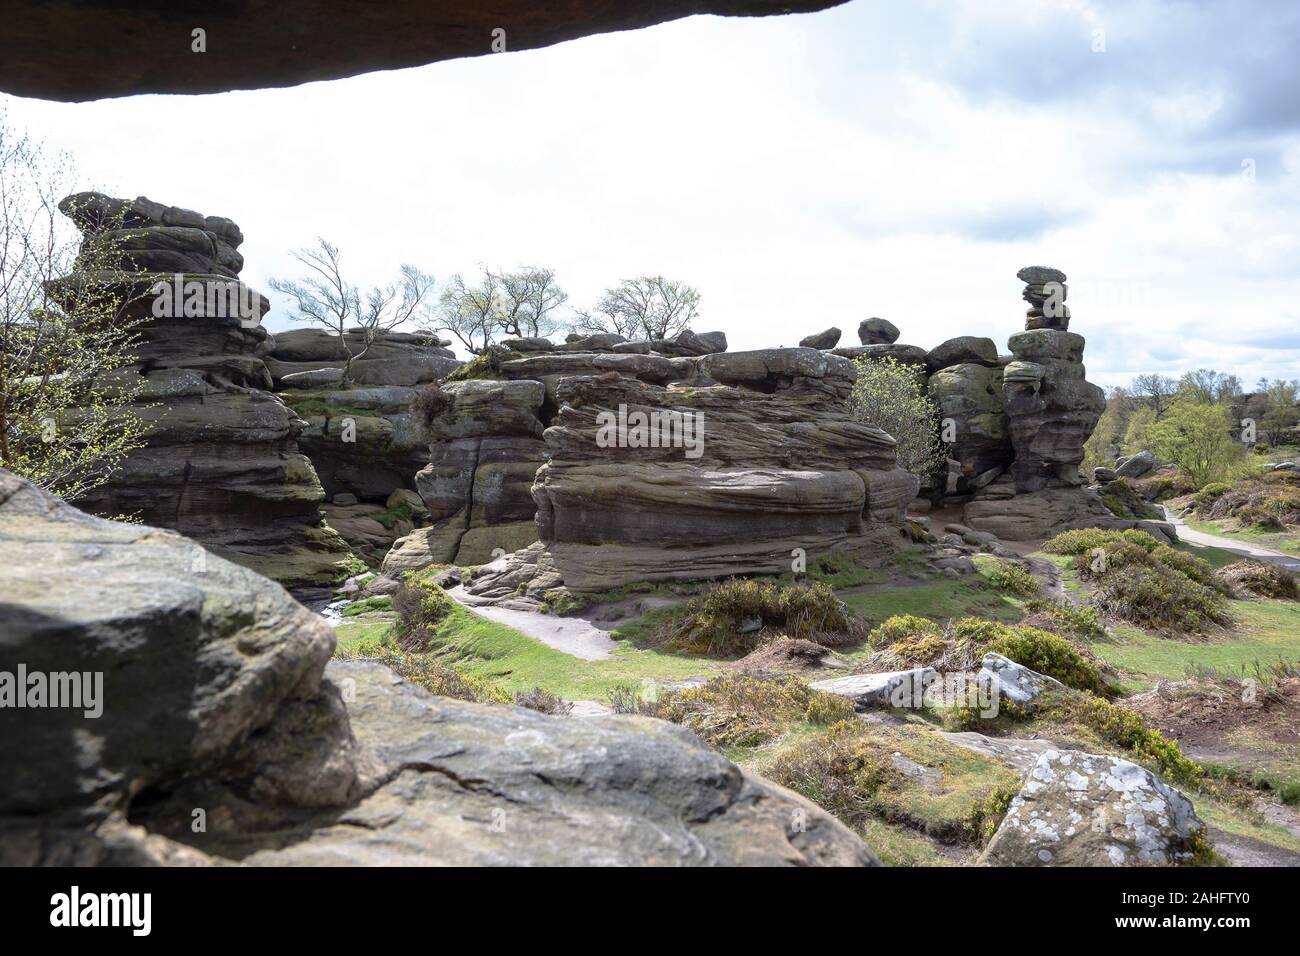 Des formations rocheuses naturelles dues aux intempéries, de glace et de vent à Brimham Rocks, North Yorkshire, Angleterre. R.-U. Banque D'Images